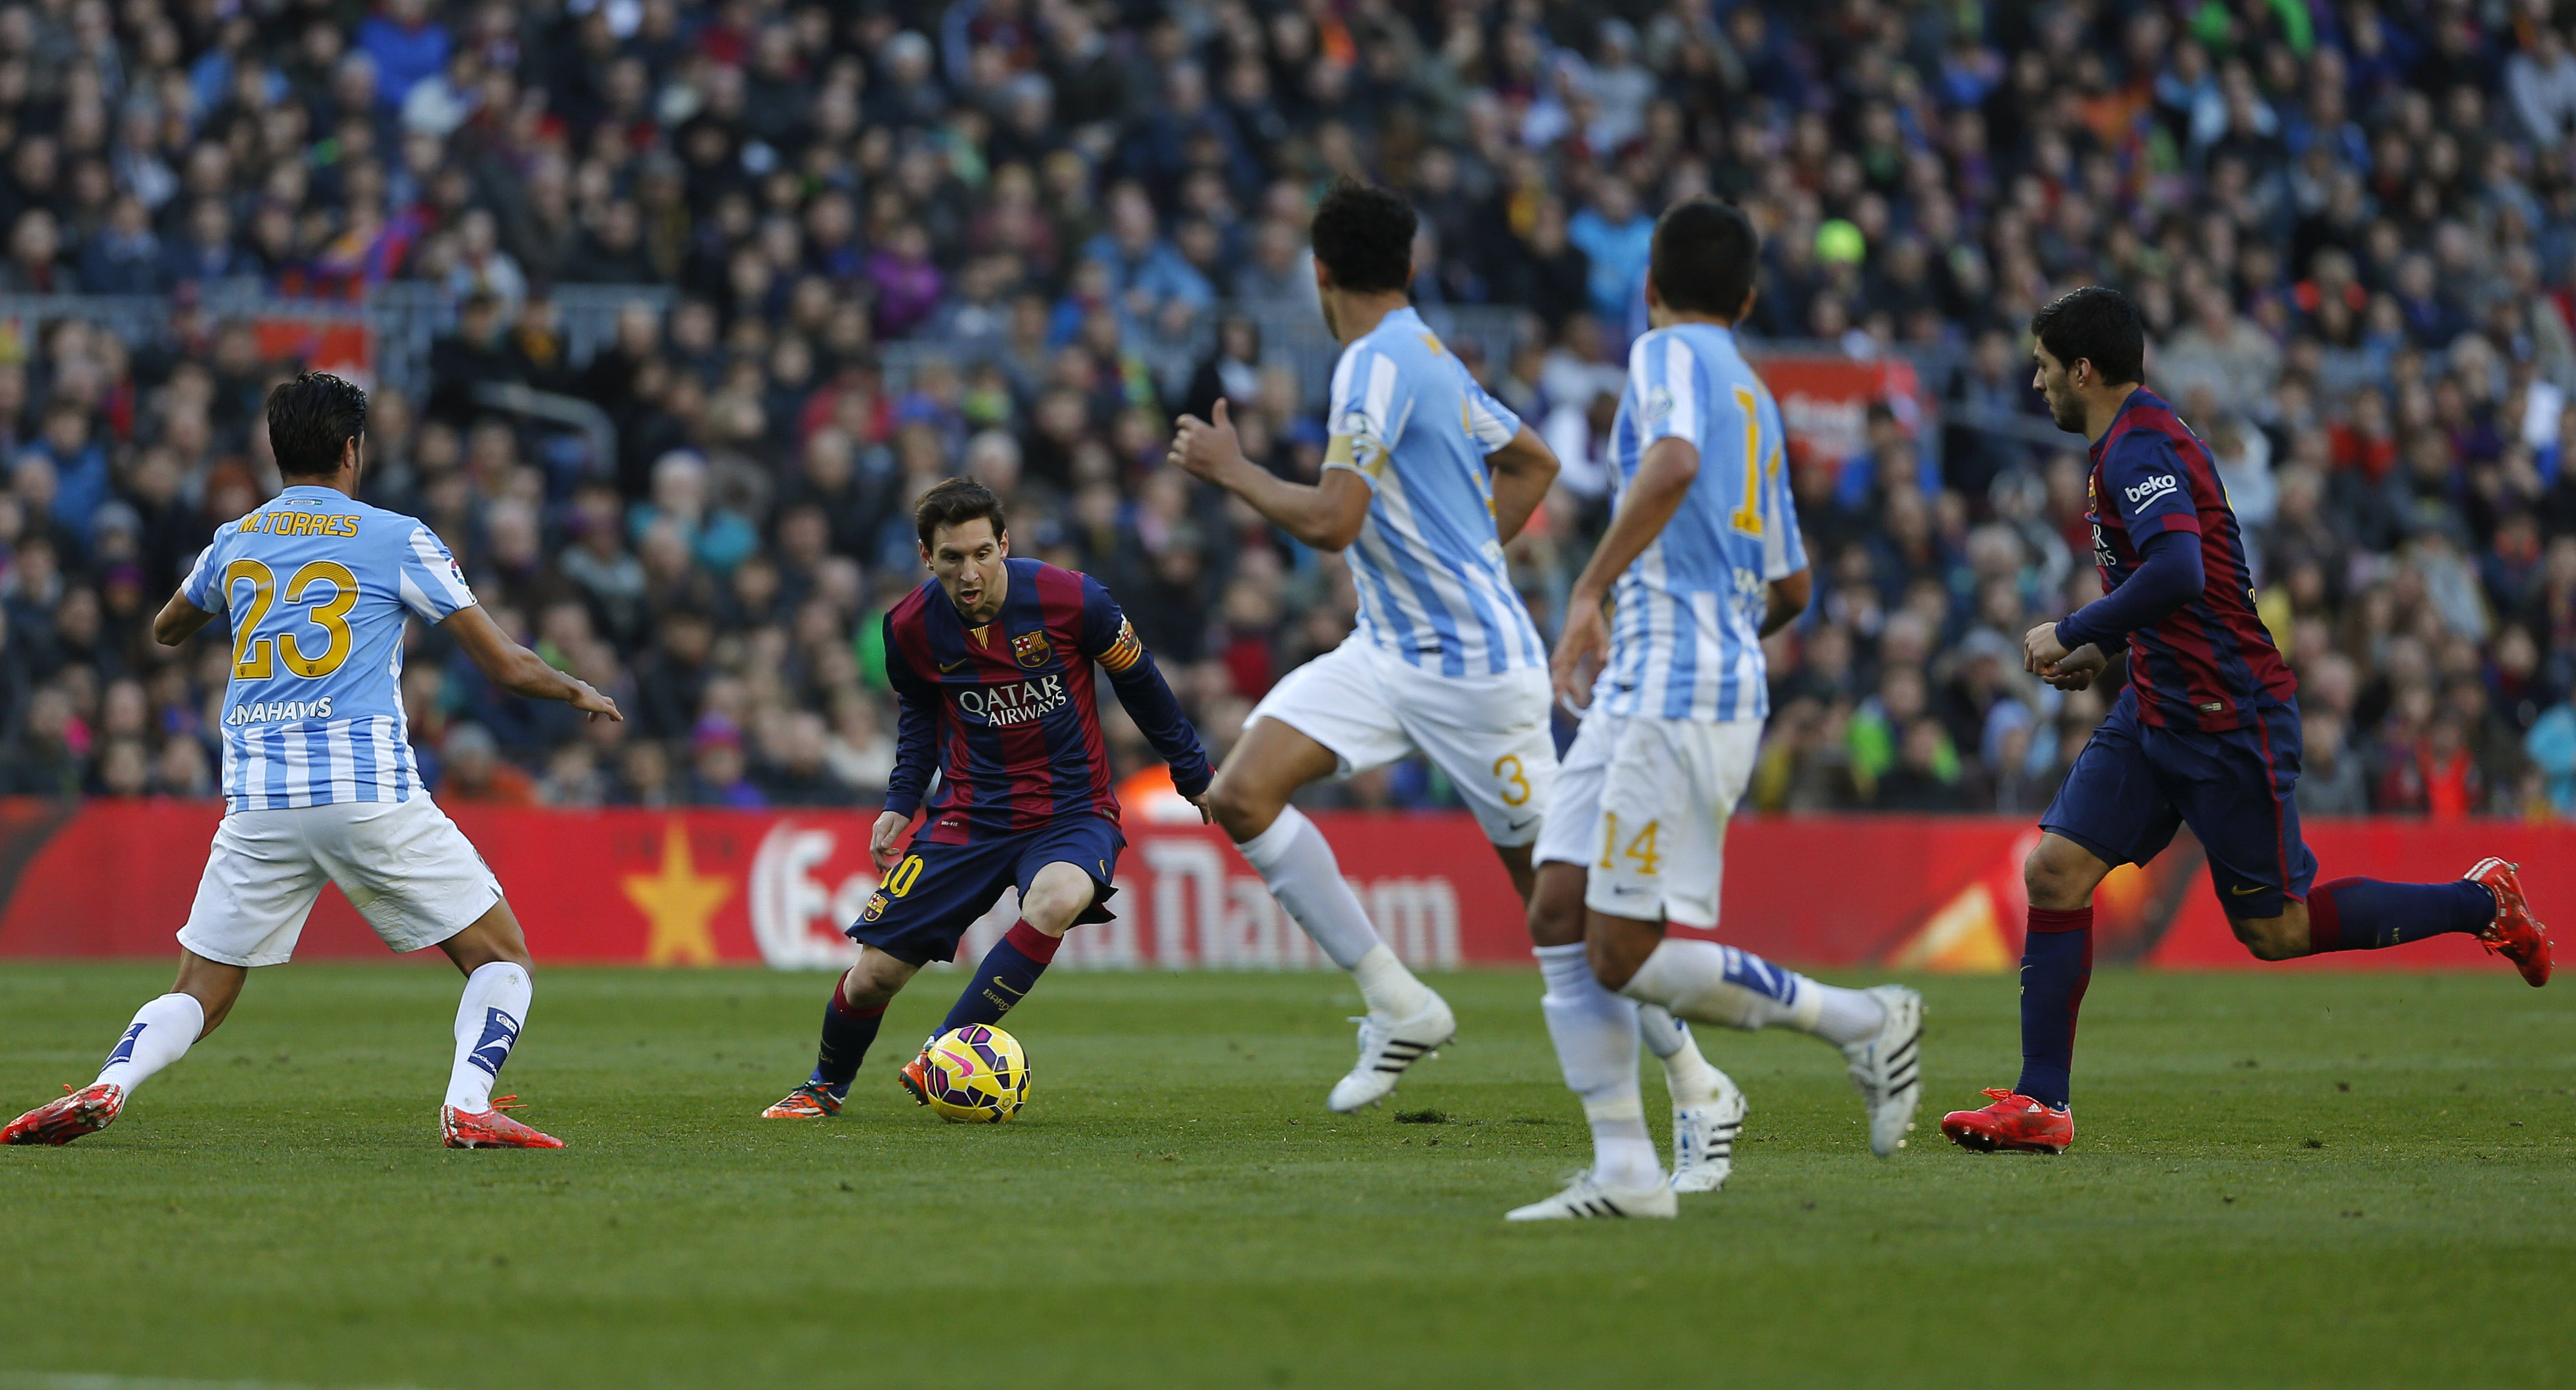 Campeones: Man City ante un Barsa y un Messi muy motivados